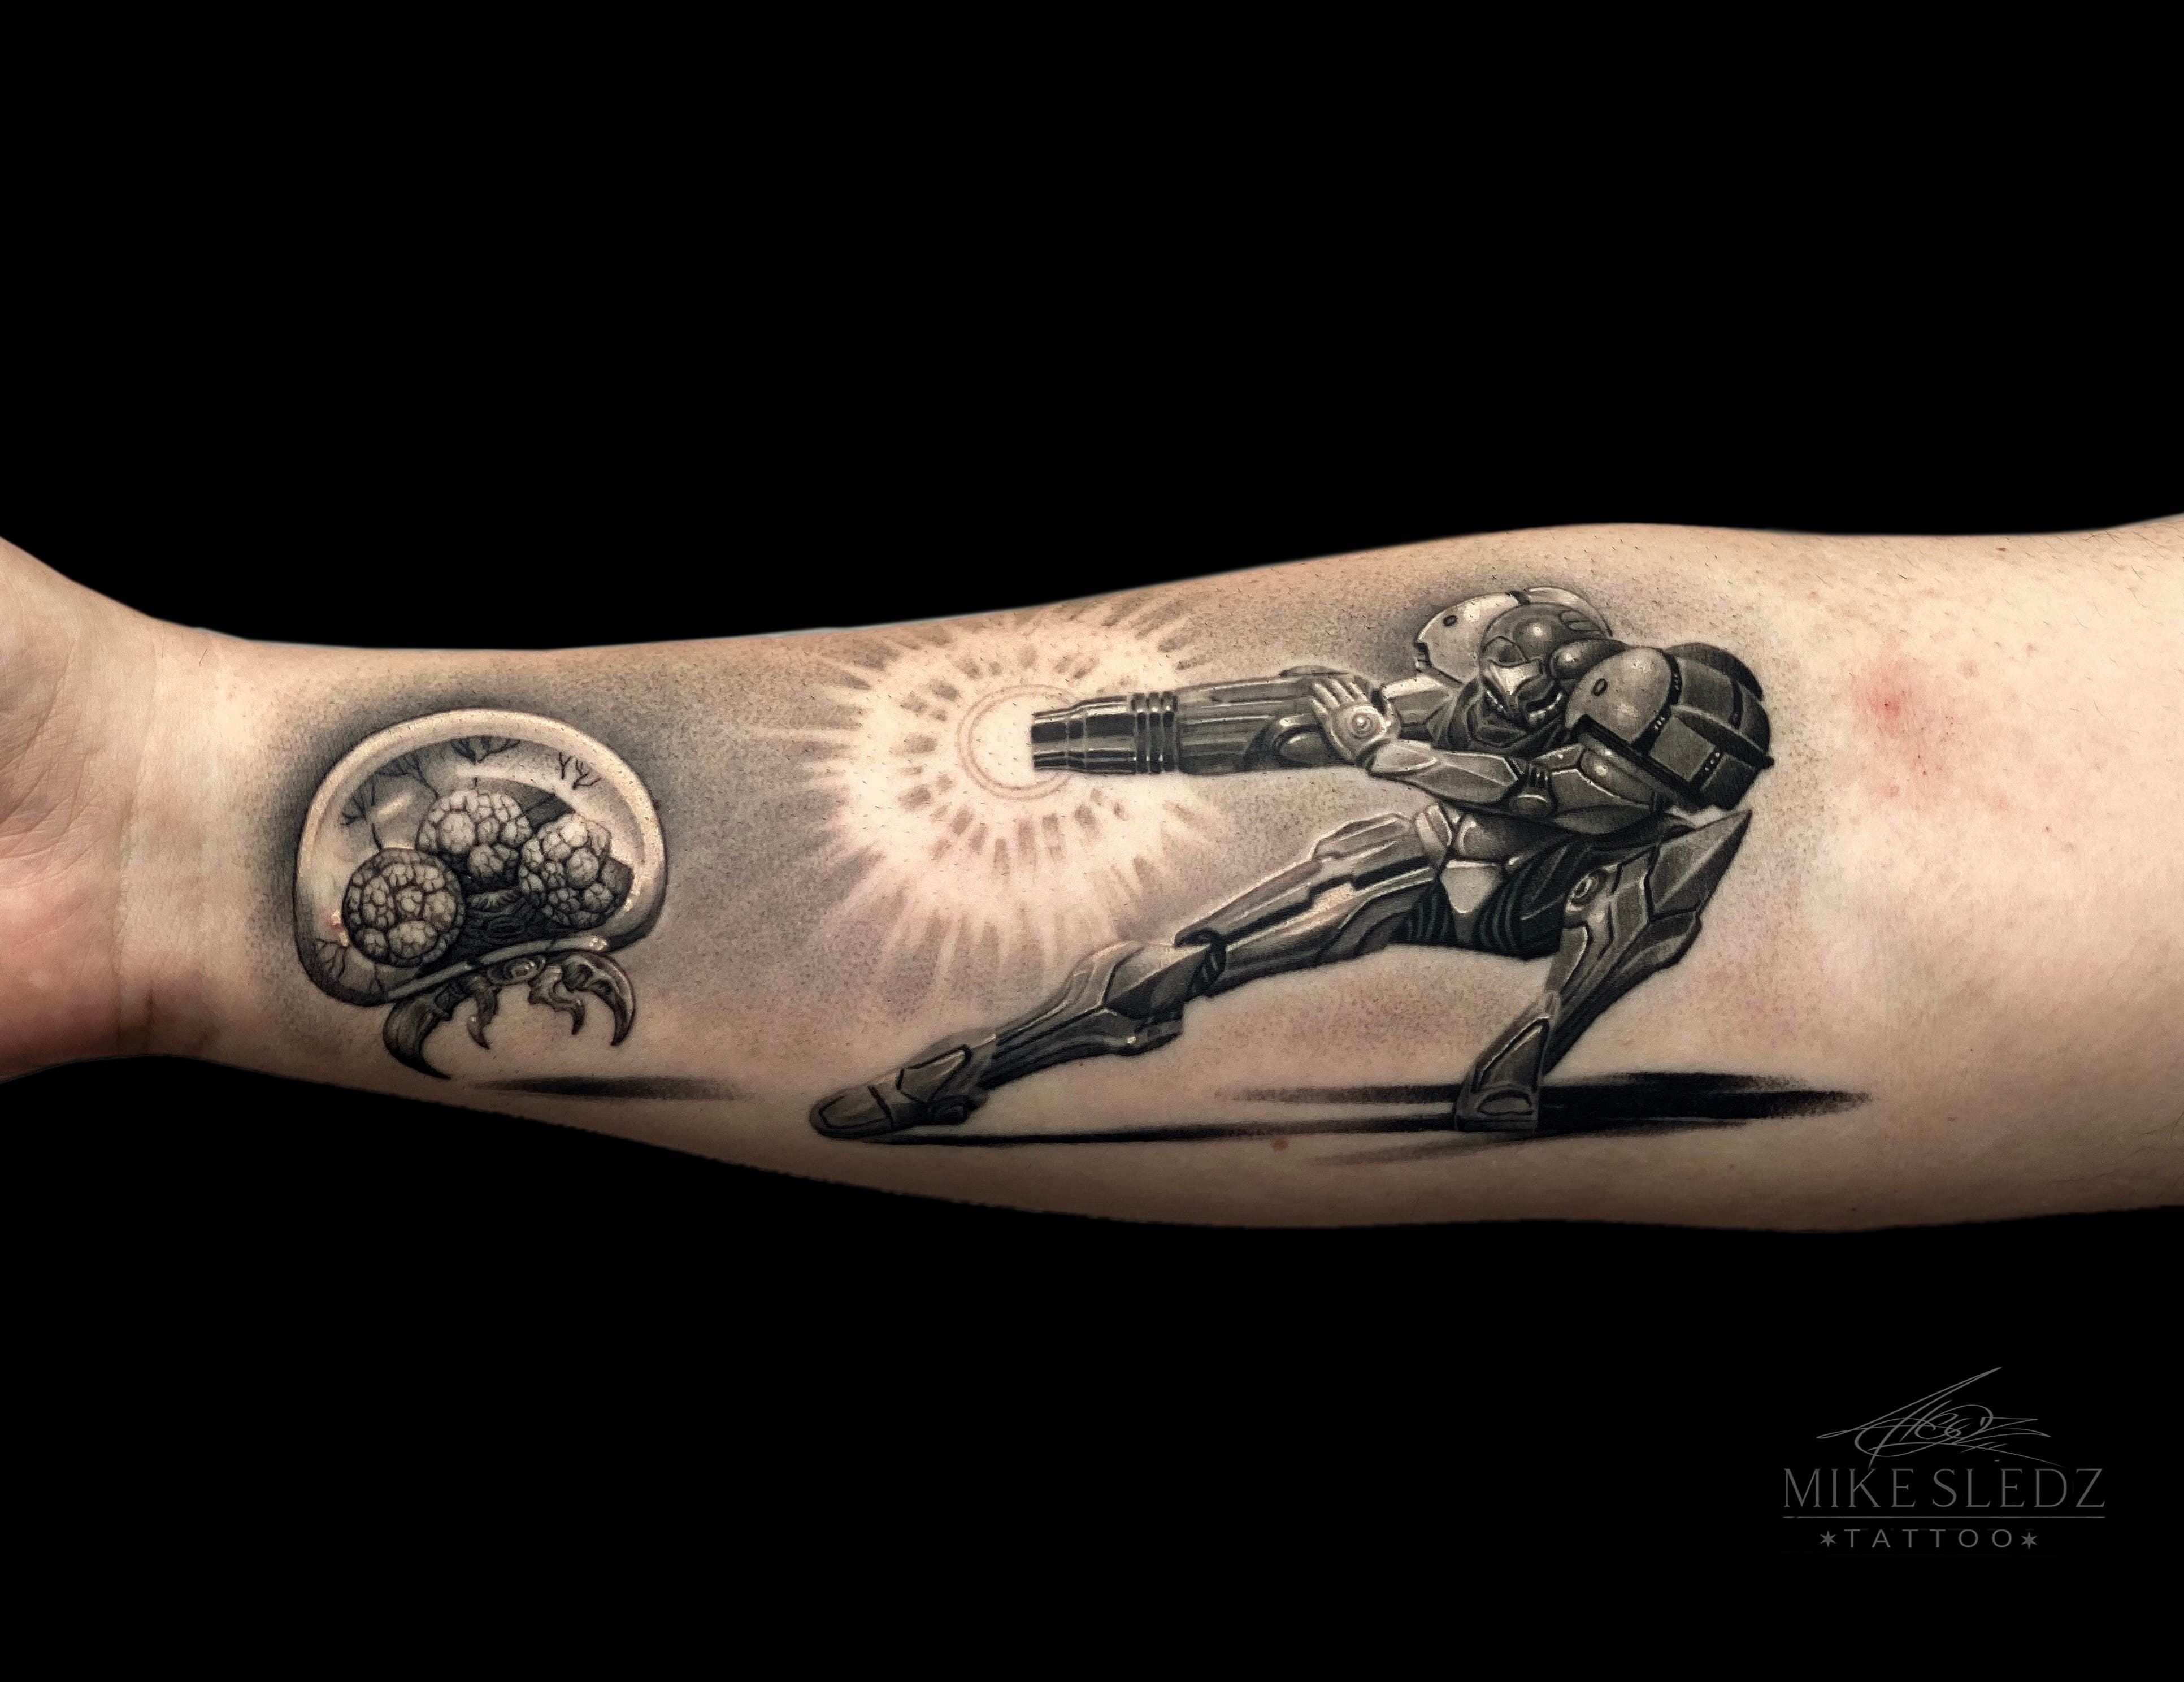 Mike  Vivid Ink Tattoos Artist  UK Tattoo Studios